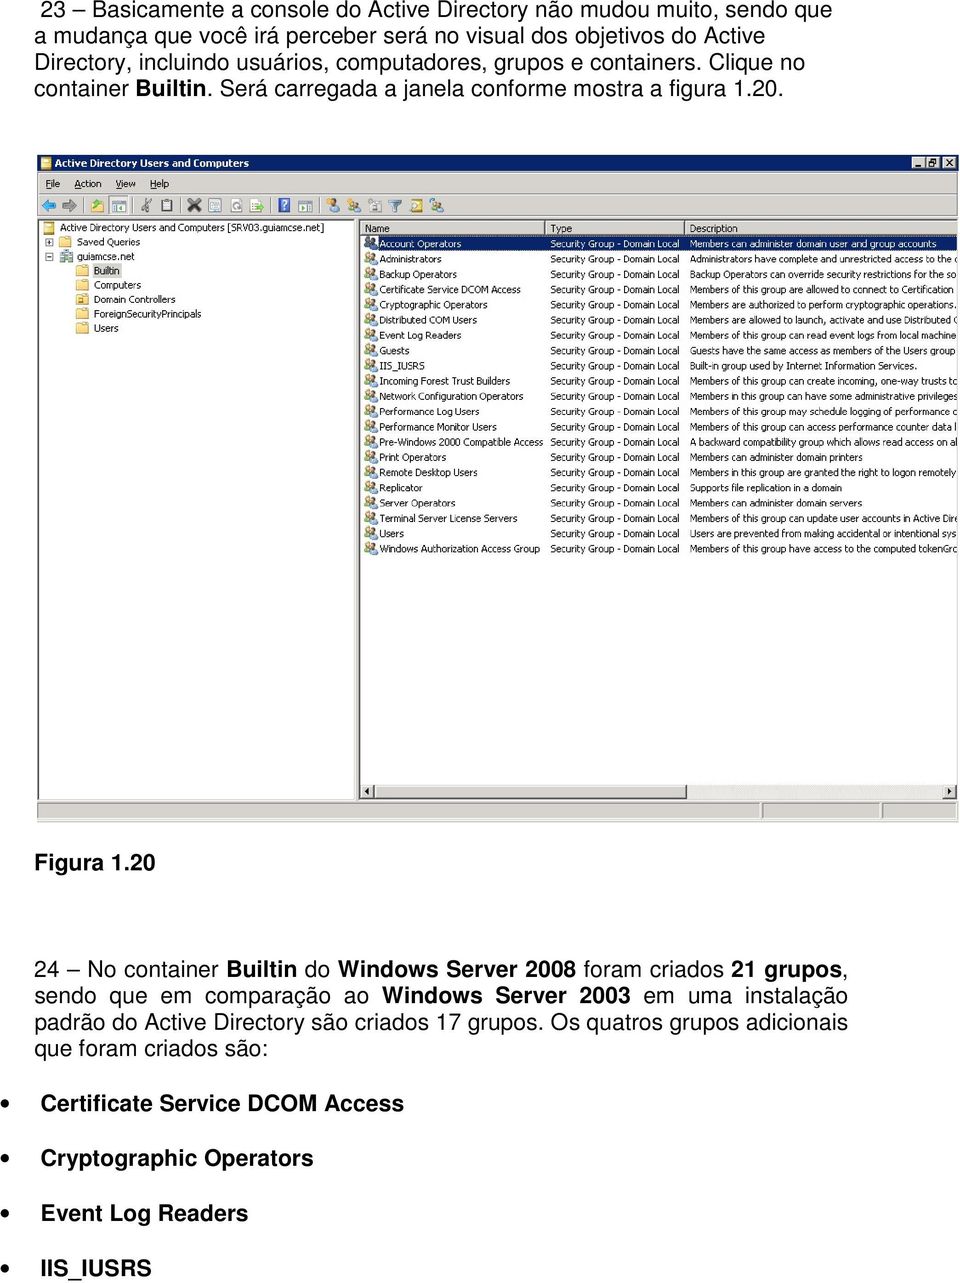 20 24 No container Builtin do Windows Server 2008 foram criados 21 grupos, sendo que em comparação ao Windows Server 2003 em uma instalação padrão do Active